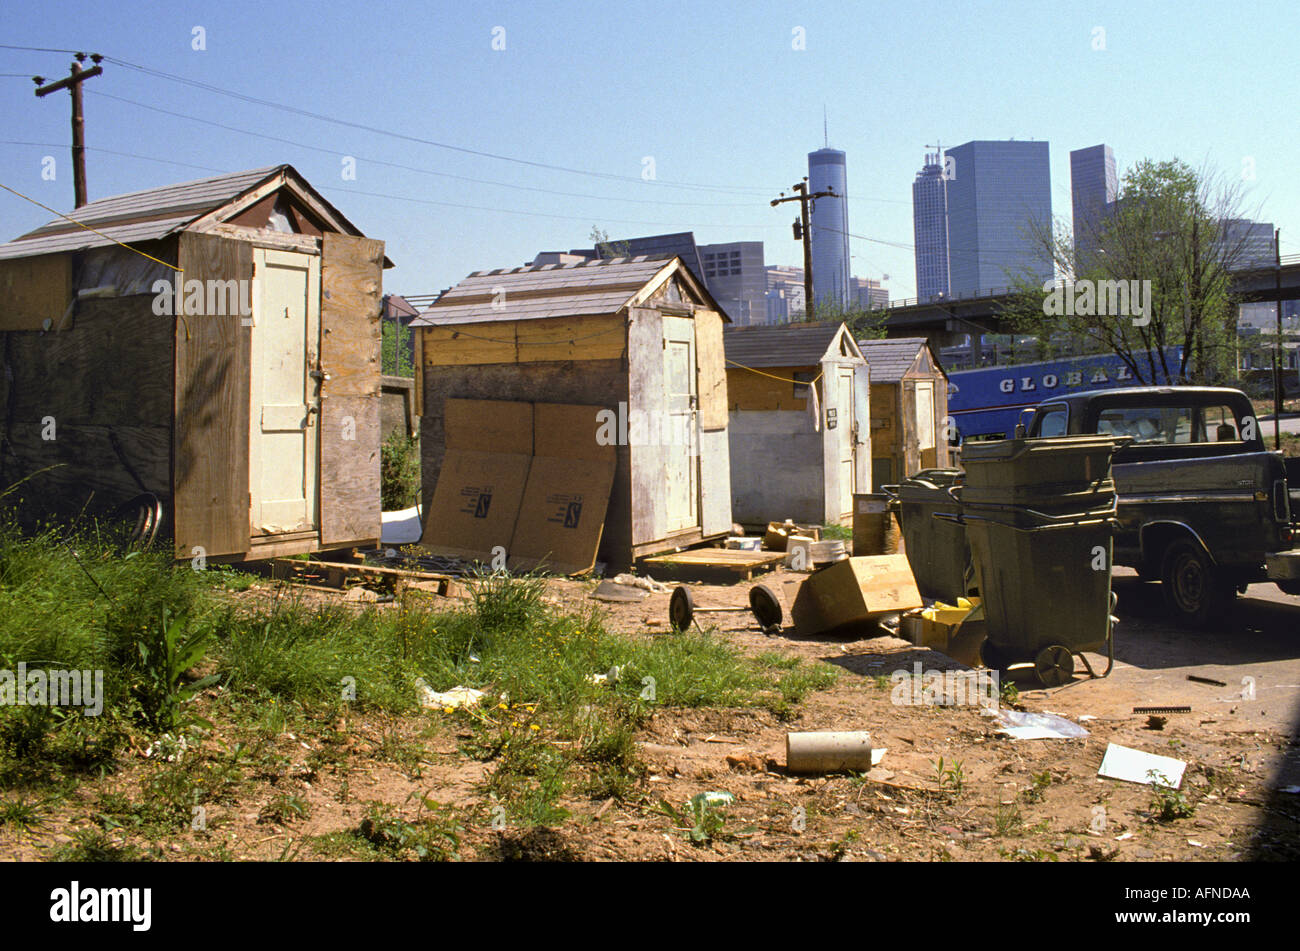 Atlanta Georgia homeless shacks located on the edge of the city Stock Photo